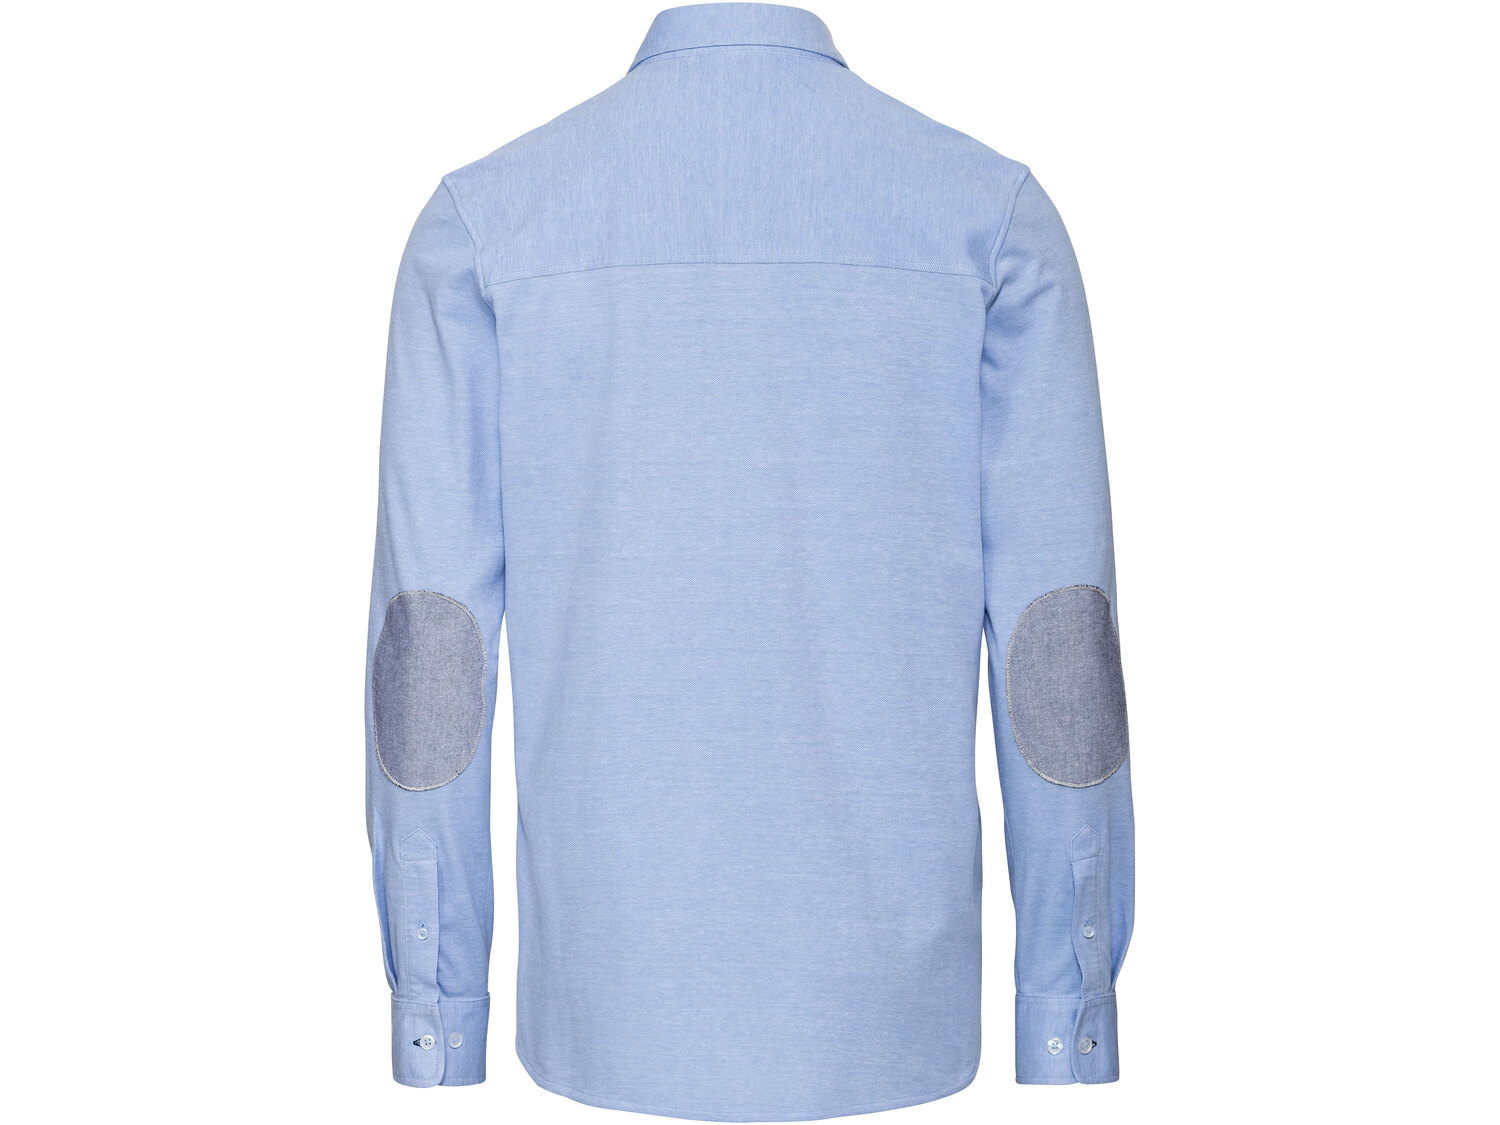 Koszula męska , cena 39,99 PLN 
- rozmiary: S-XXL
- 100% bawełny
- modne łaty ...